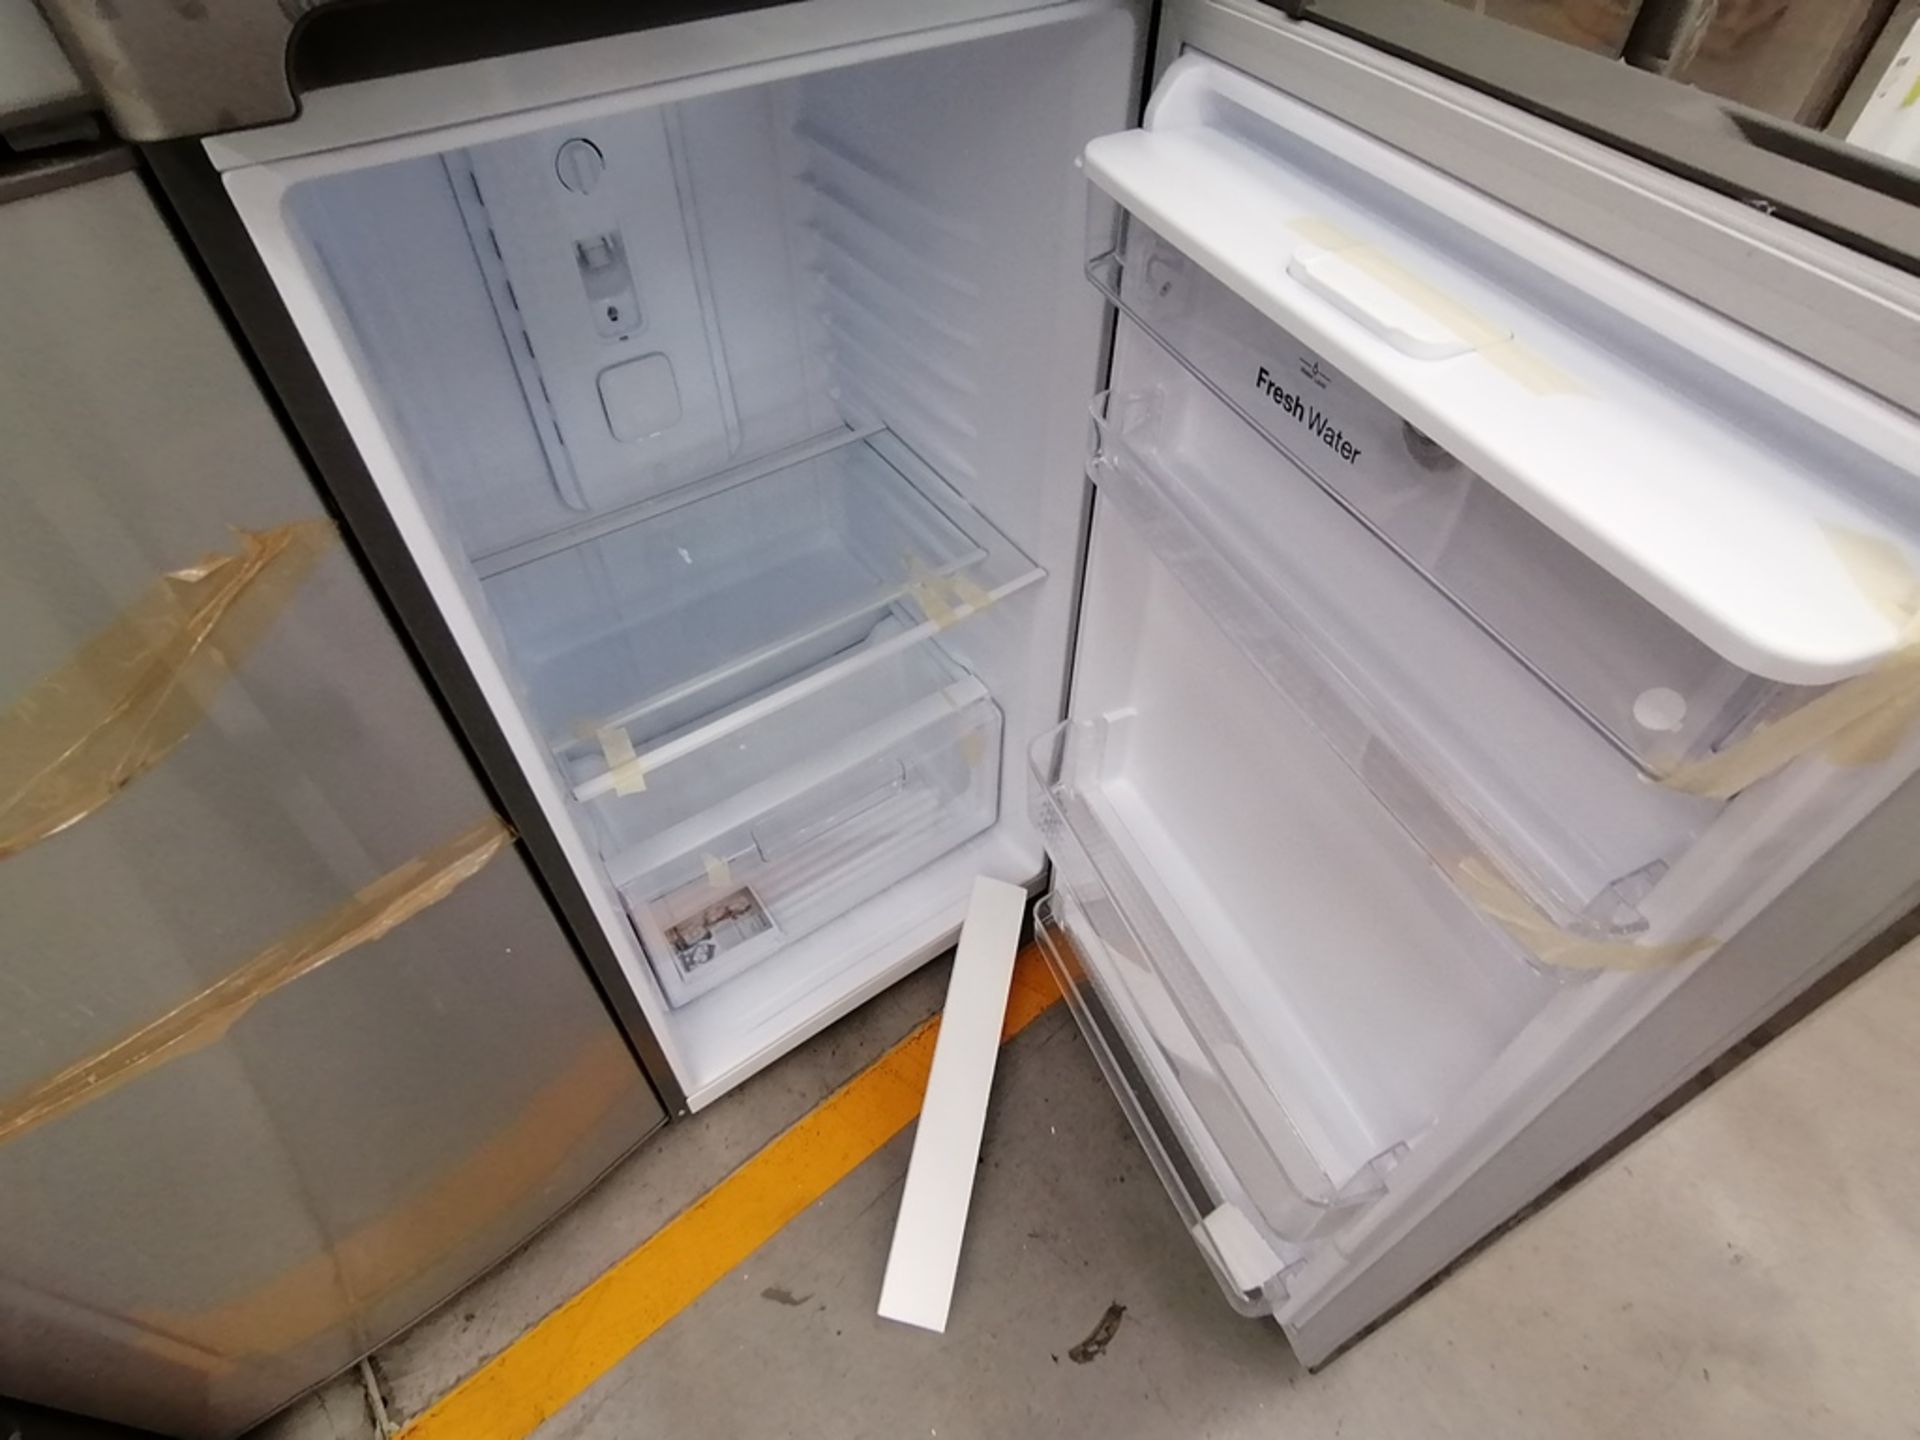 Lote de 2 Refrigeradores, Incluye: 1 Refrigerador con dispensador de agua, Marca Winia, Modelo DFR4 - Image 15 of 16